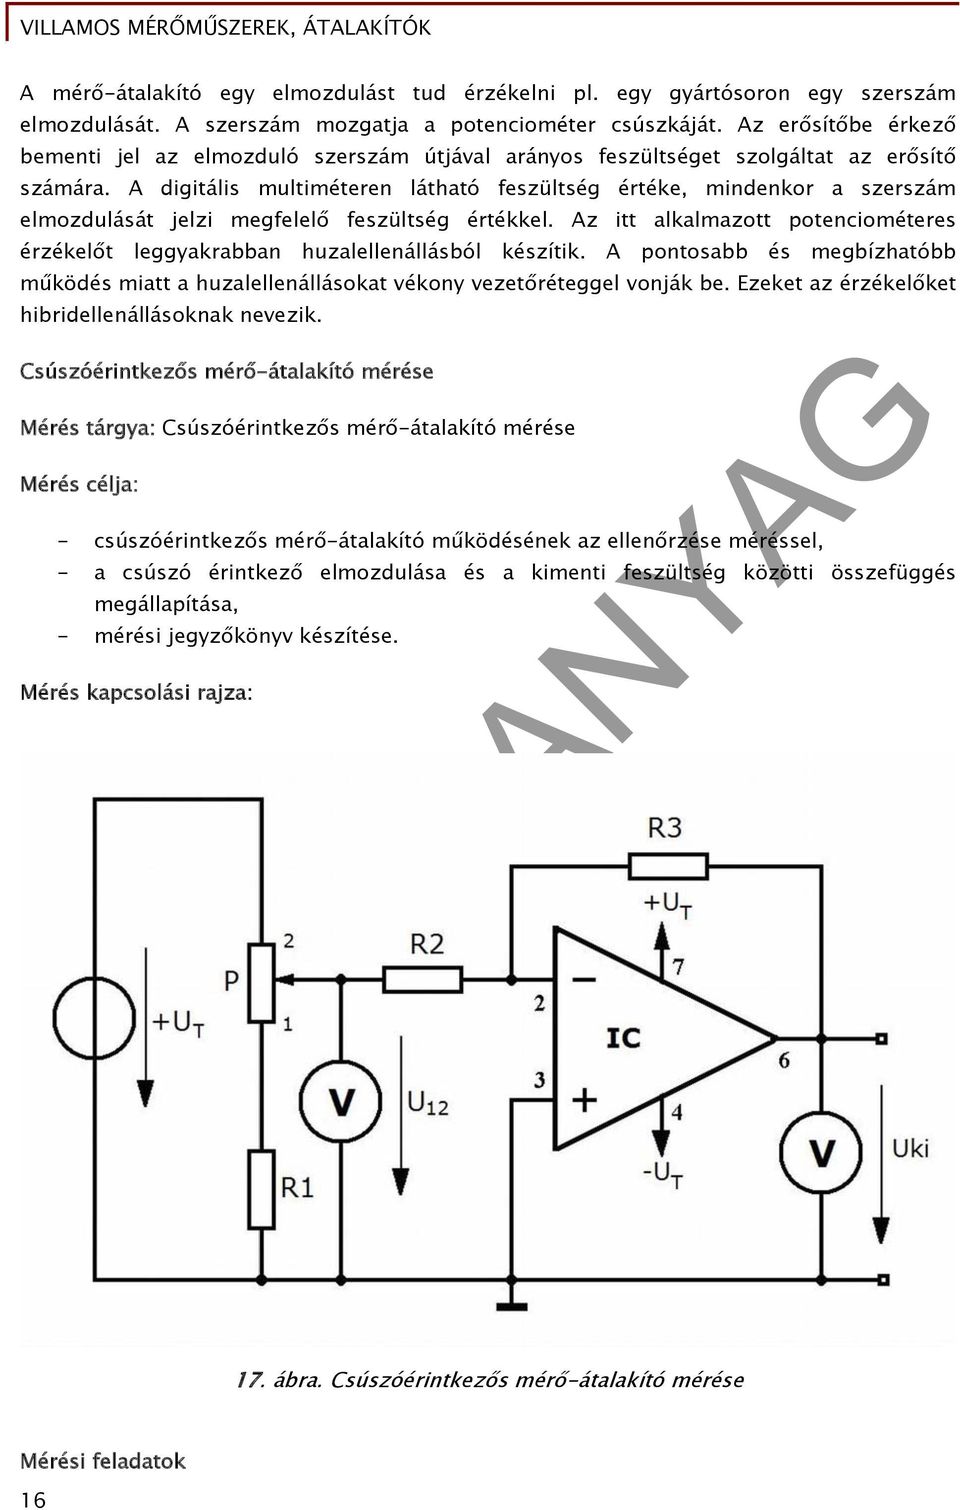 Villamos mérőműszerek, átalakítók - PDF Free Download